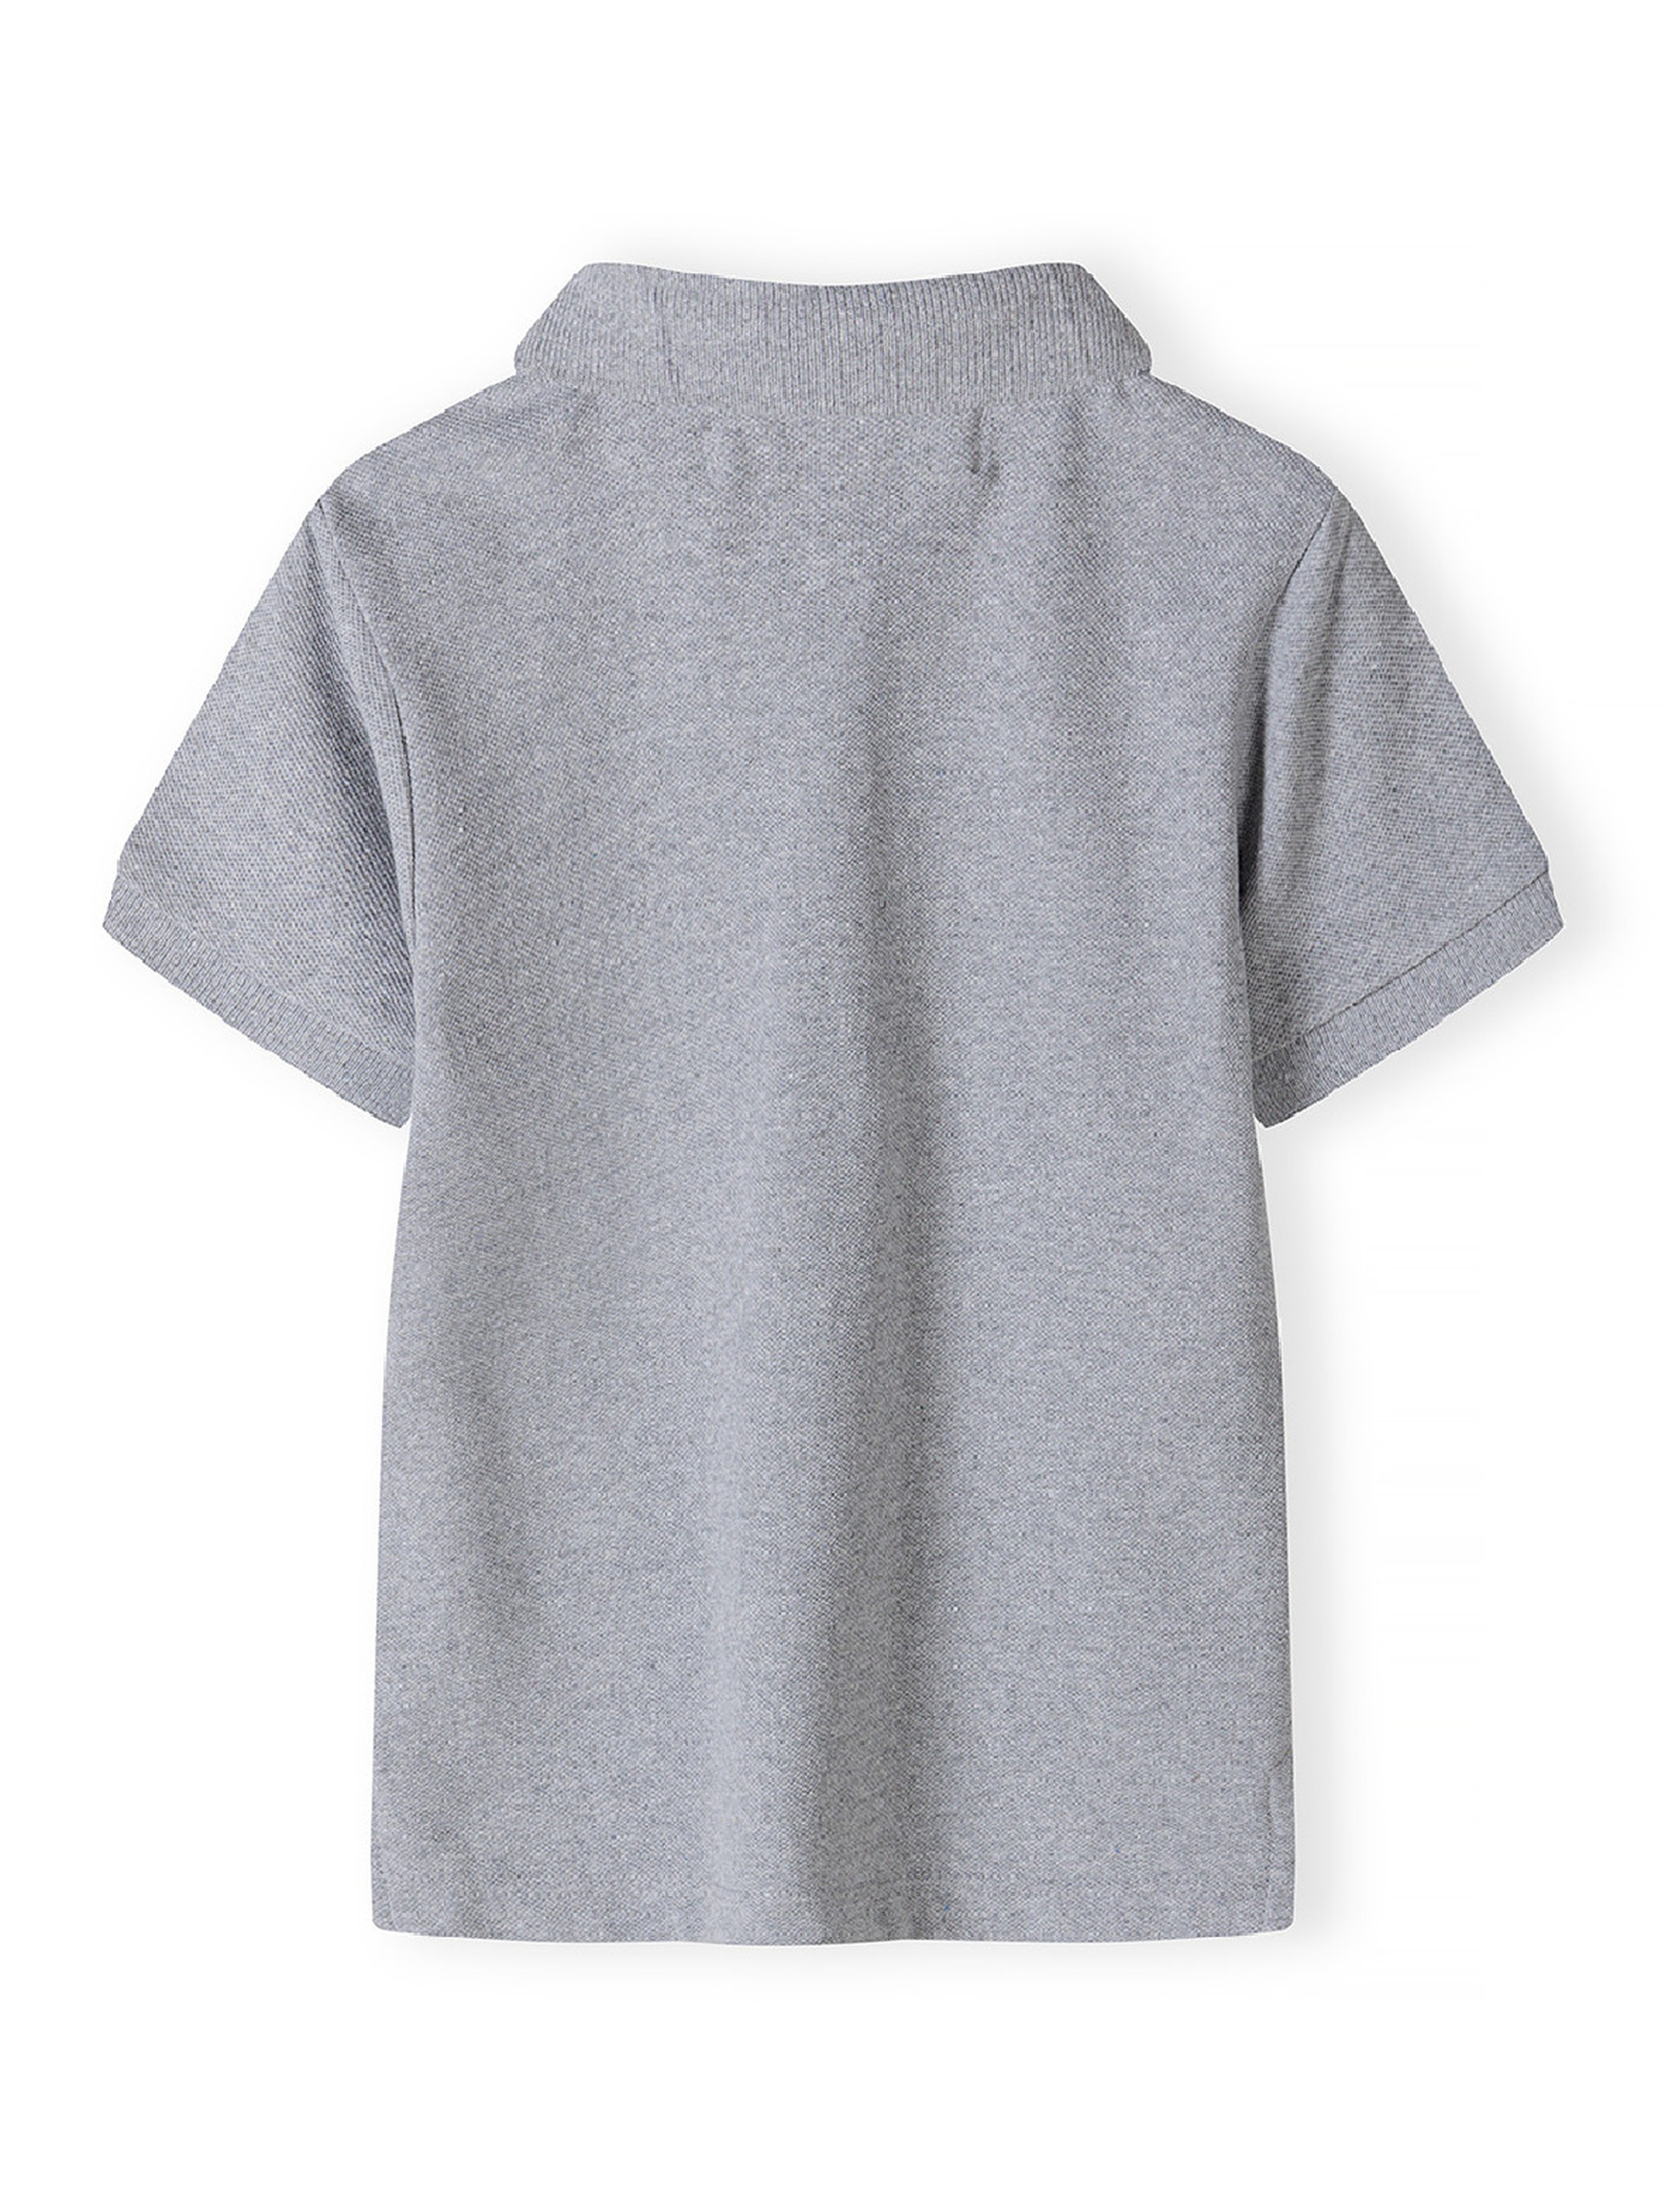 Bawełniana chłopięca koszulka polo z krótkim rękawem- szara